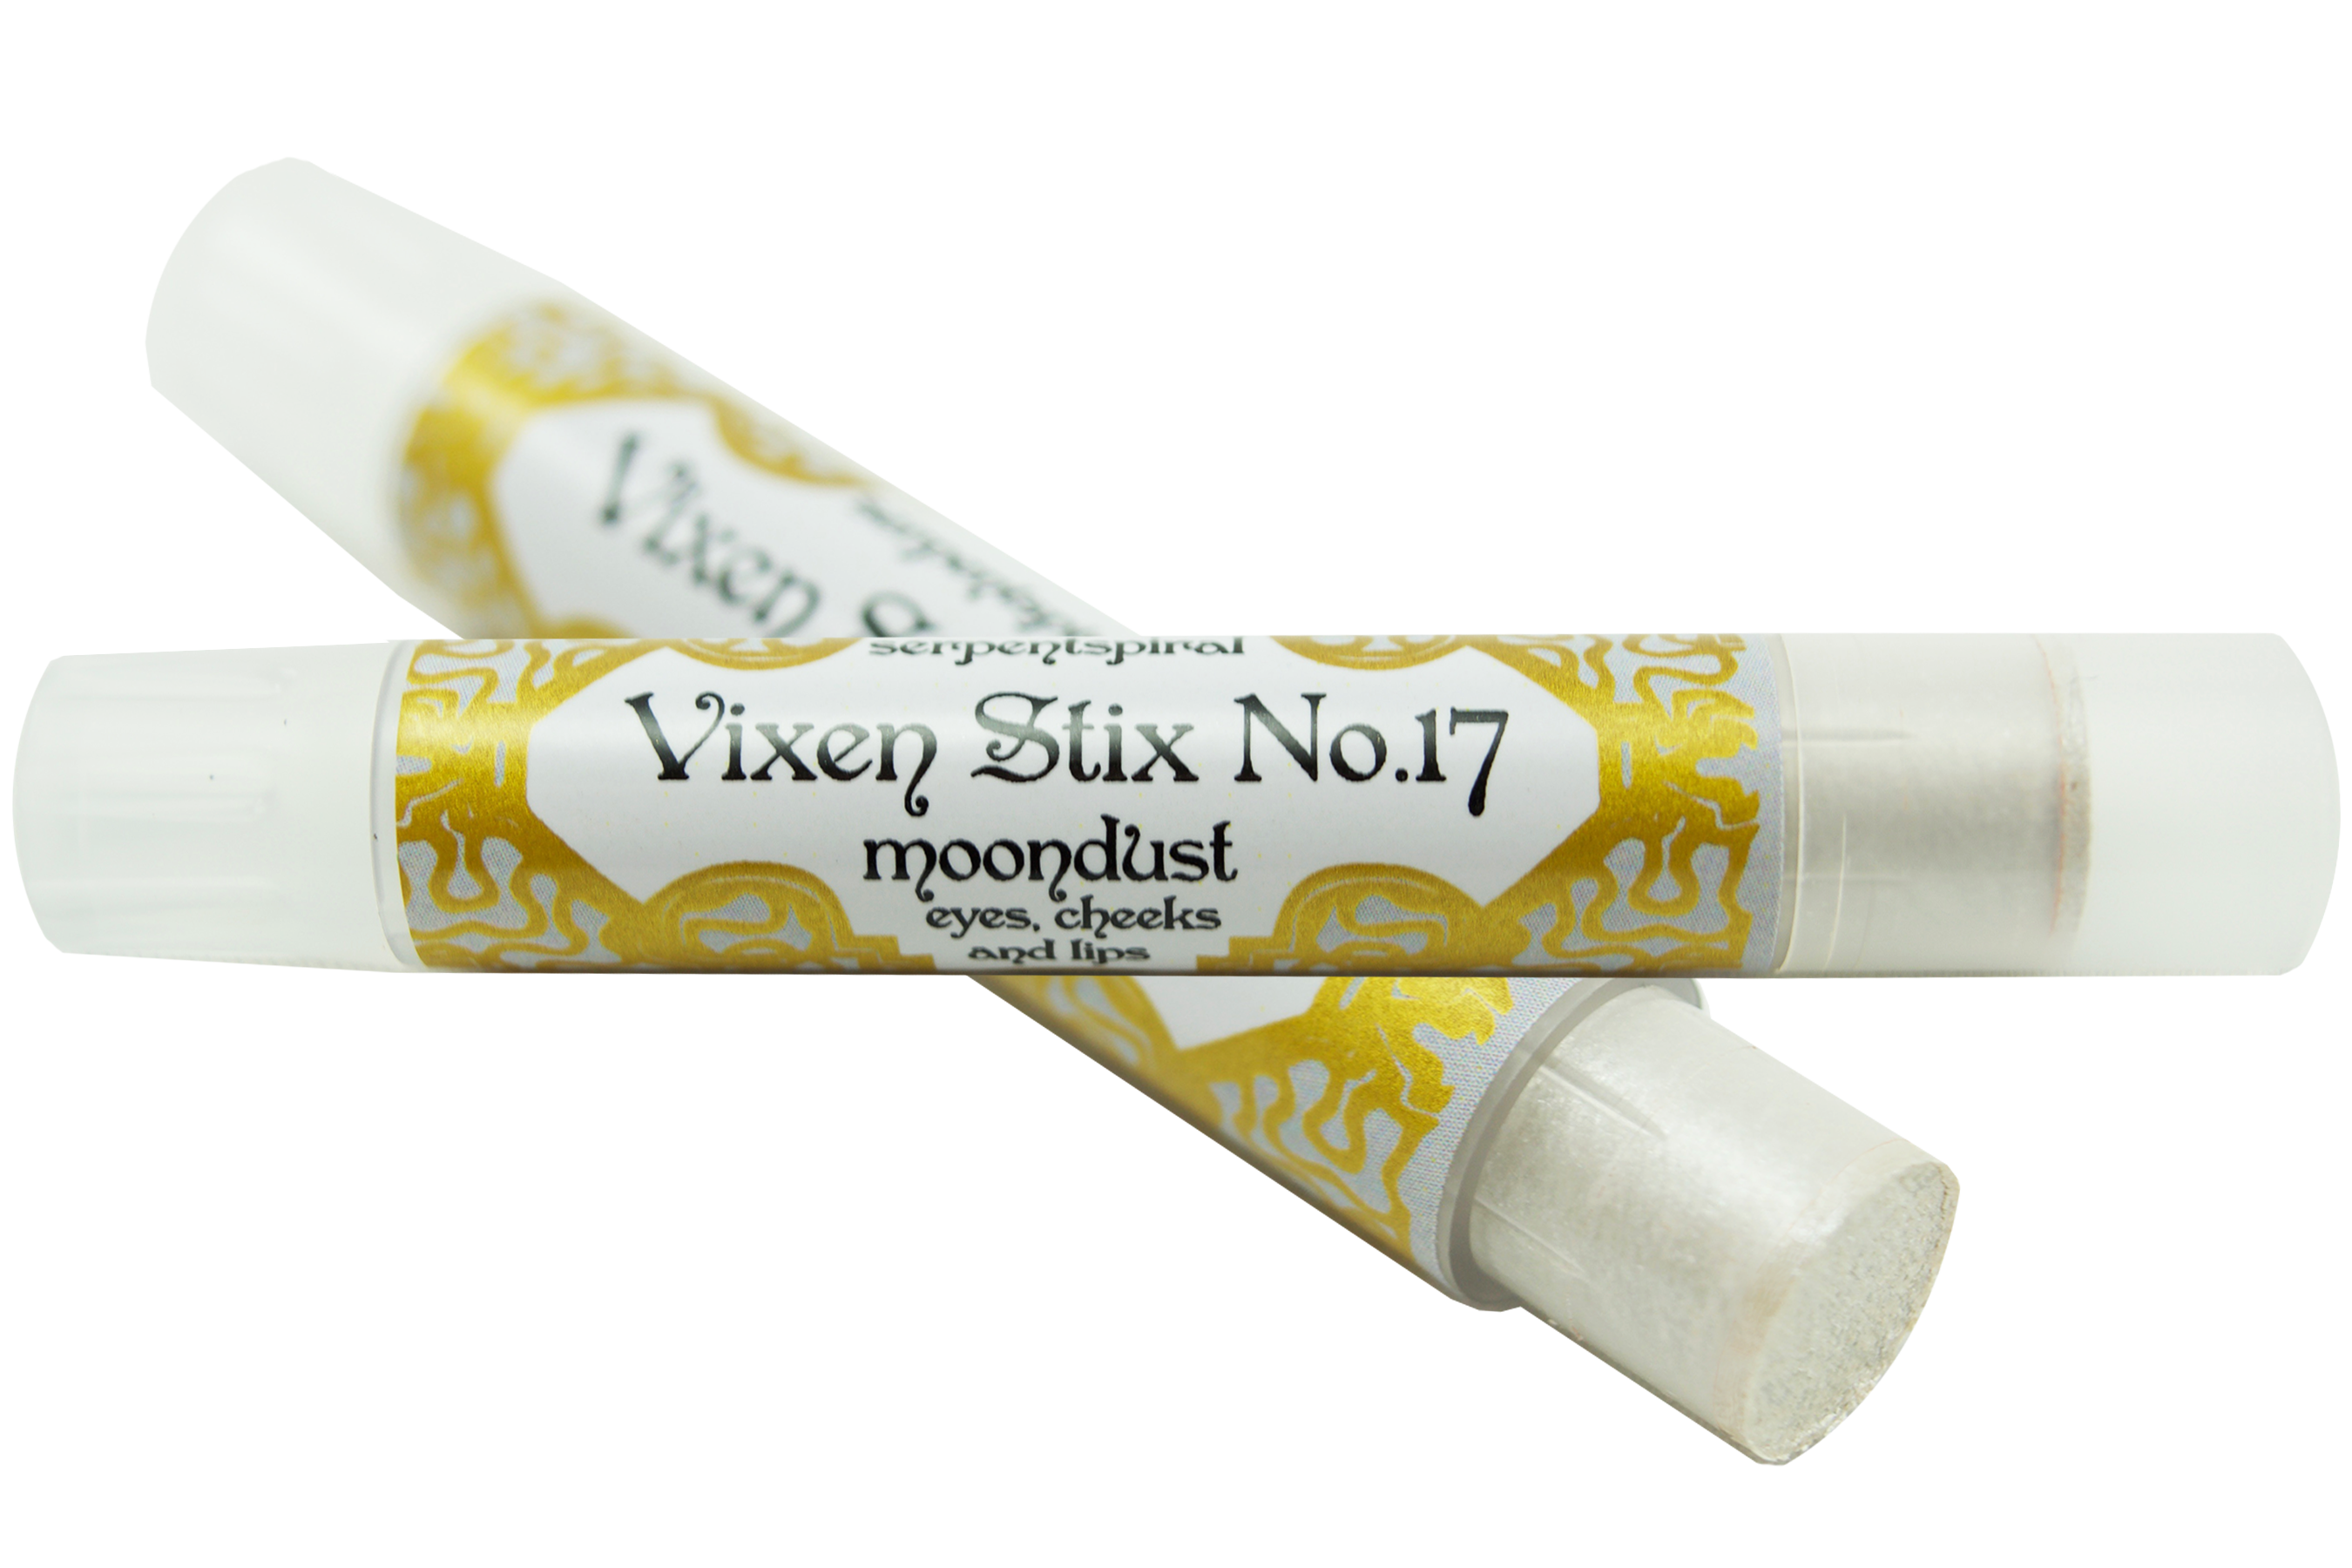 Vixen Stix No.17 ~ moondust organic highlighter stick